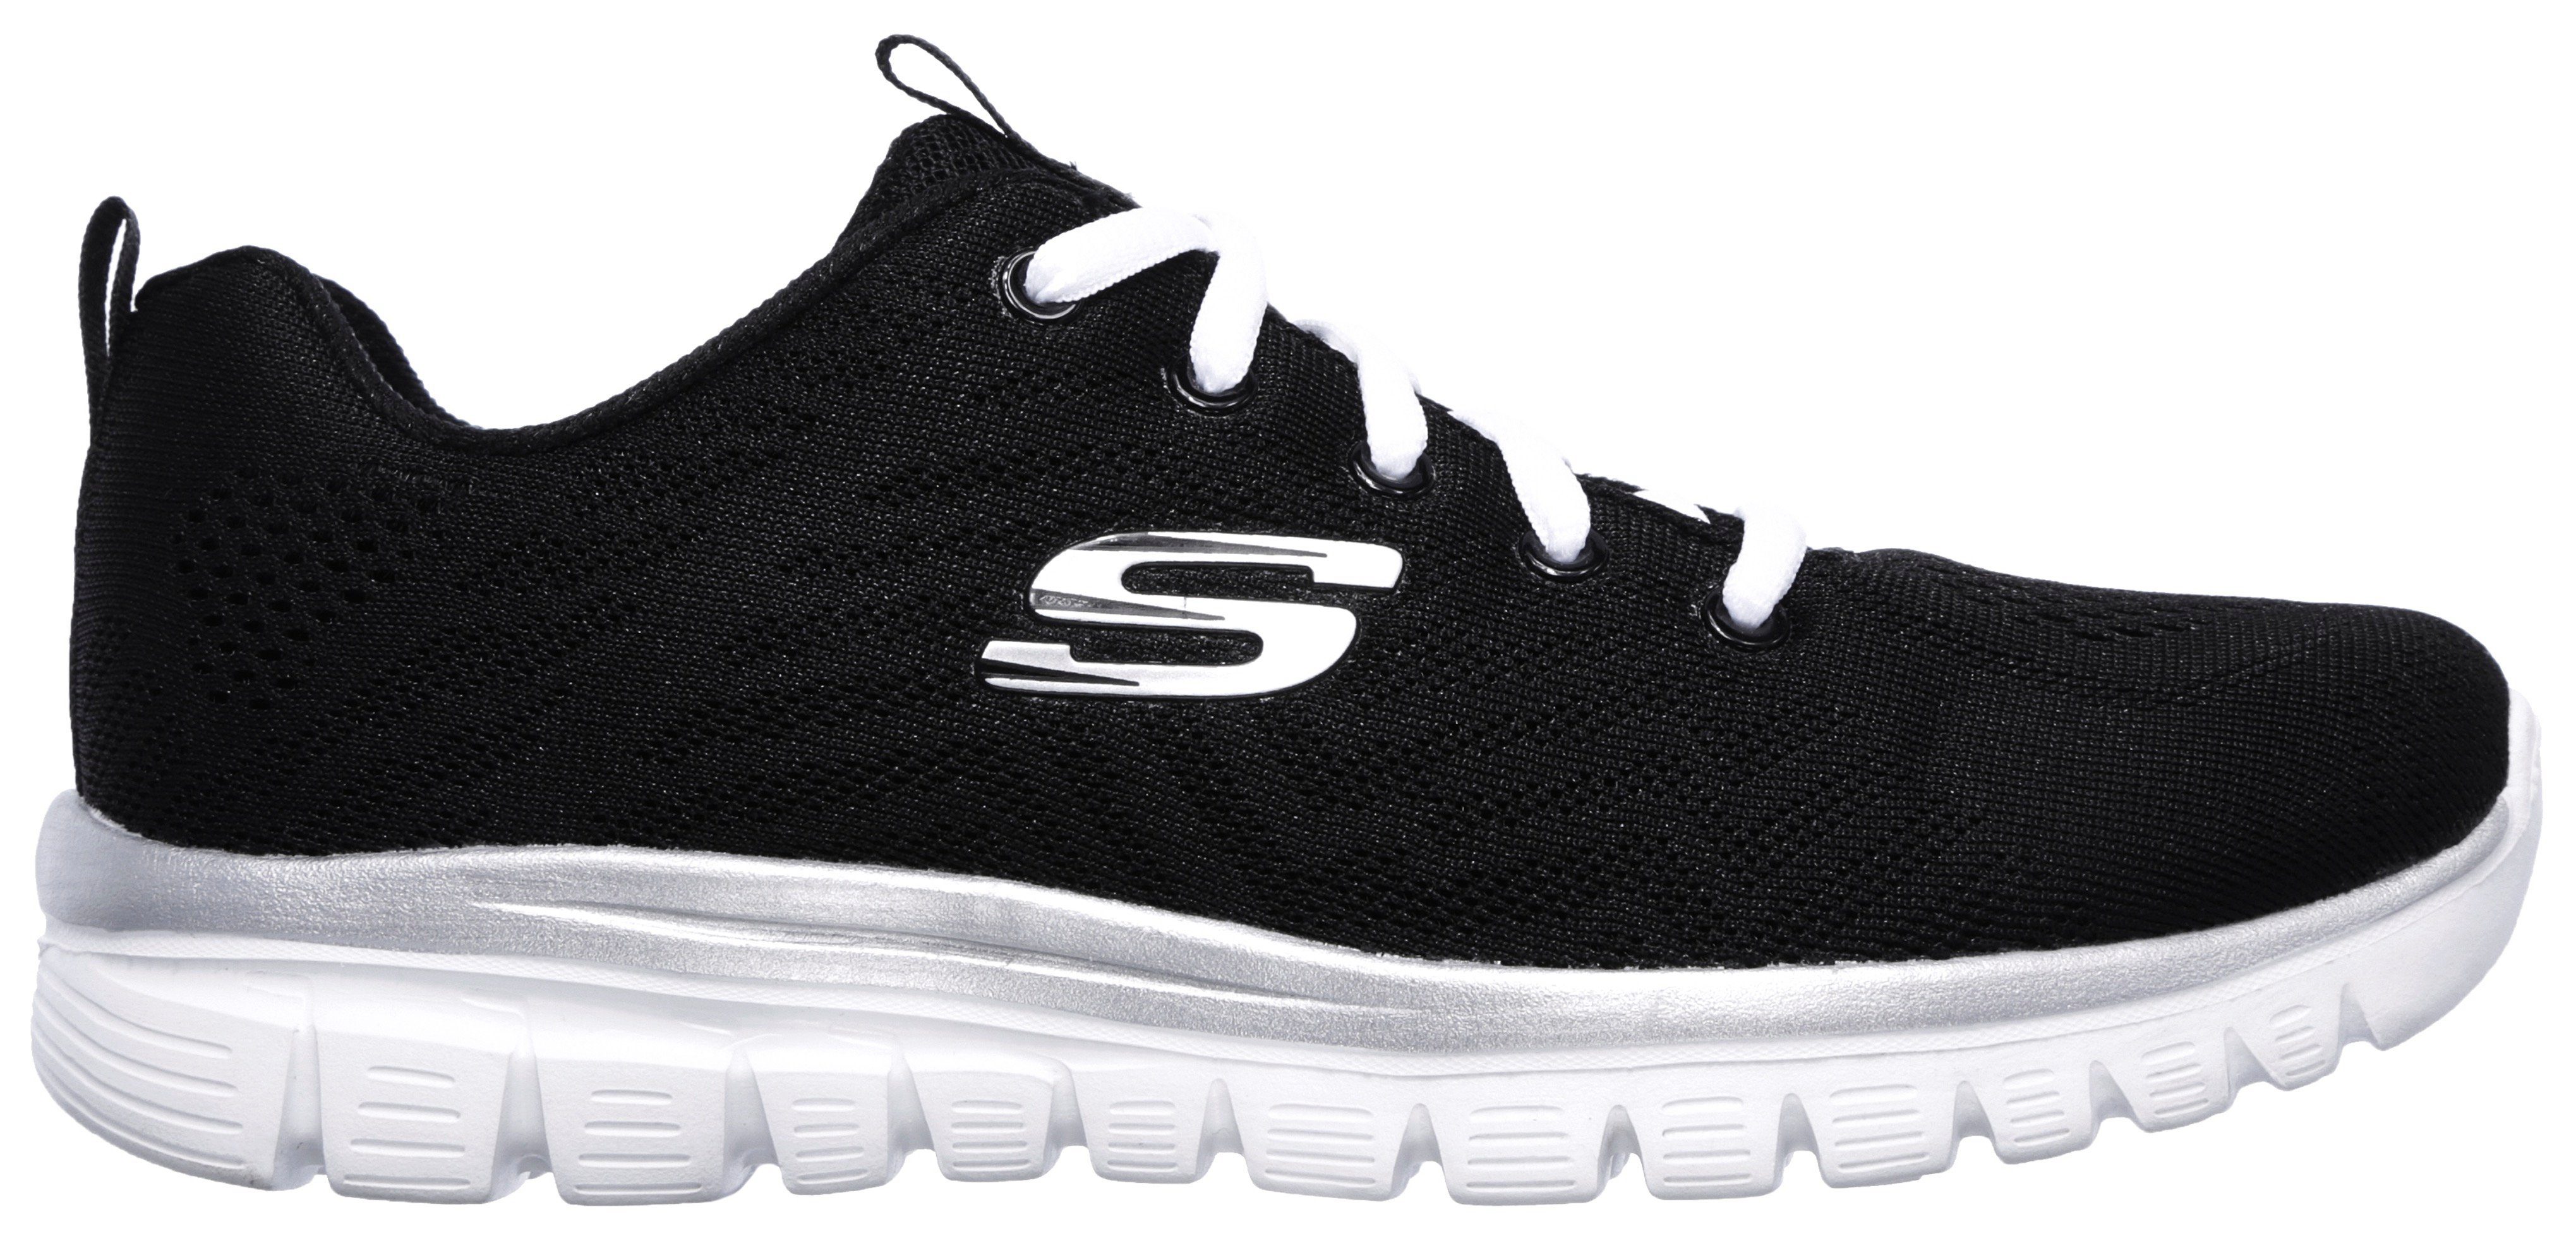 Get schwarz-weiß Sneaker Graceful Connected Foam Dämpfung Memory Skechers durch mit -